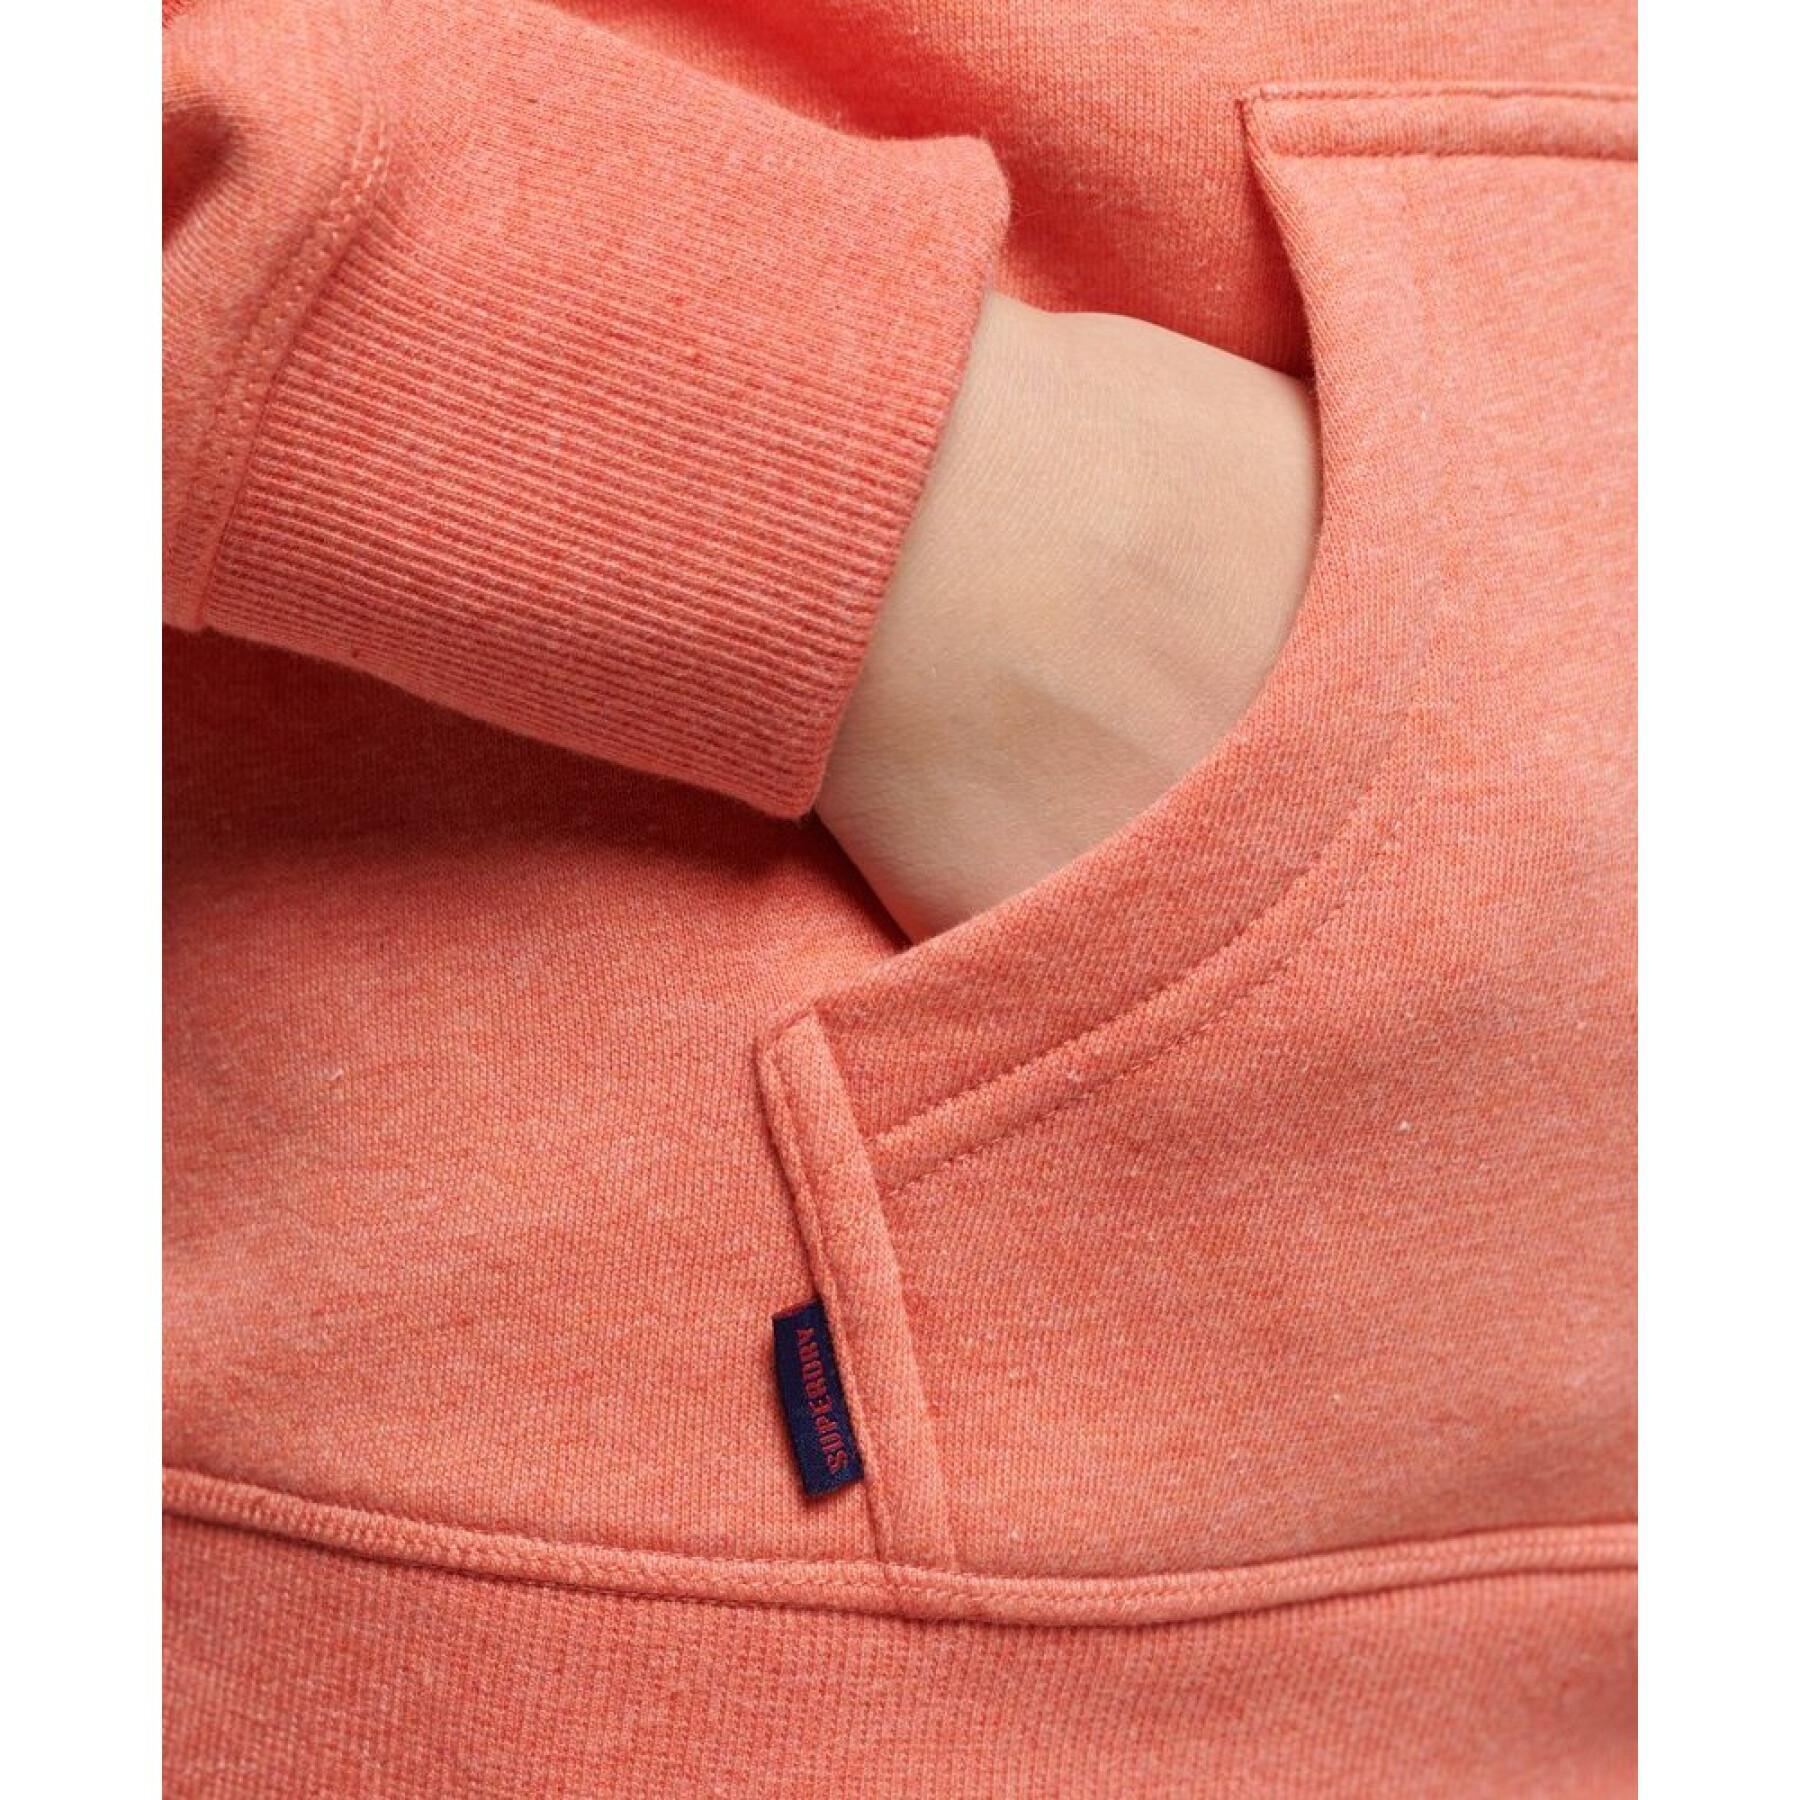 Sweatshirt à capuche en coton bio femme Superdry Essential Logo